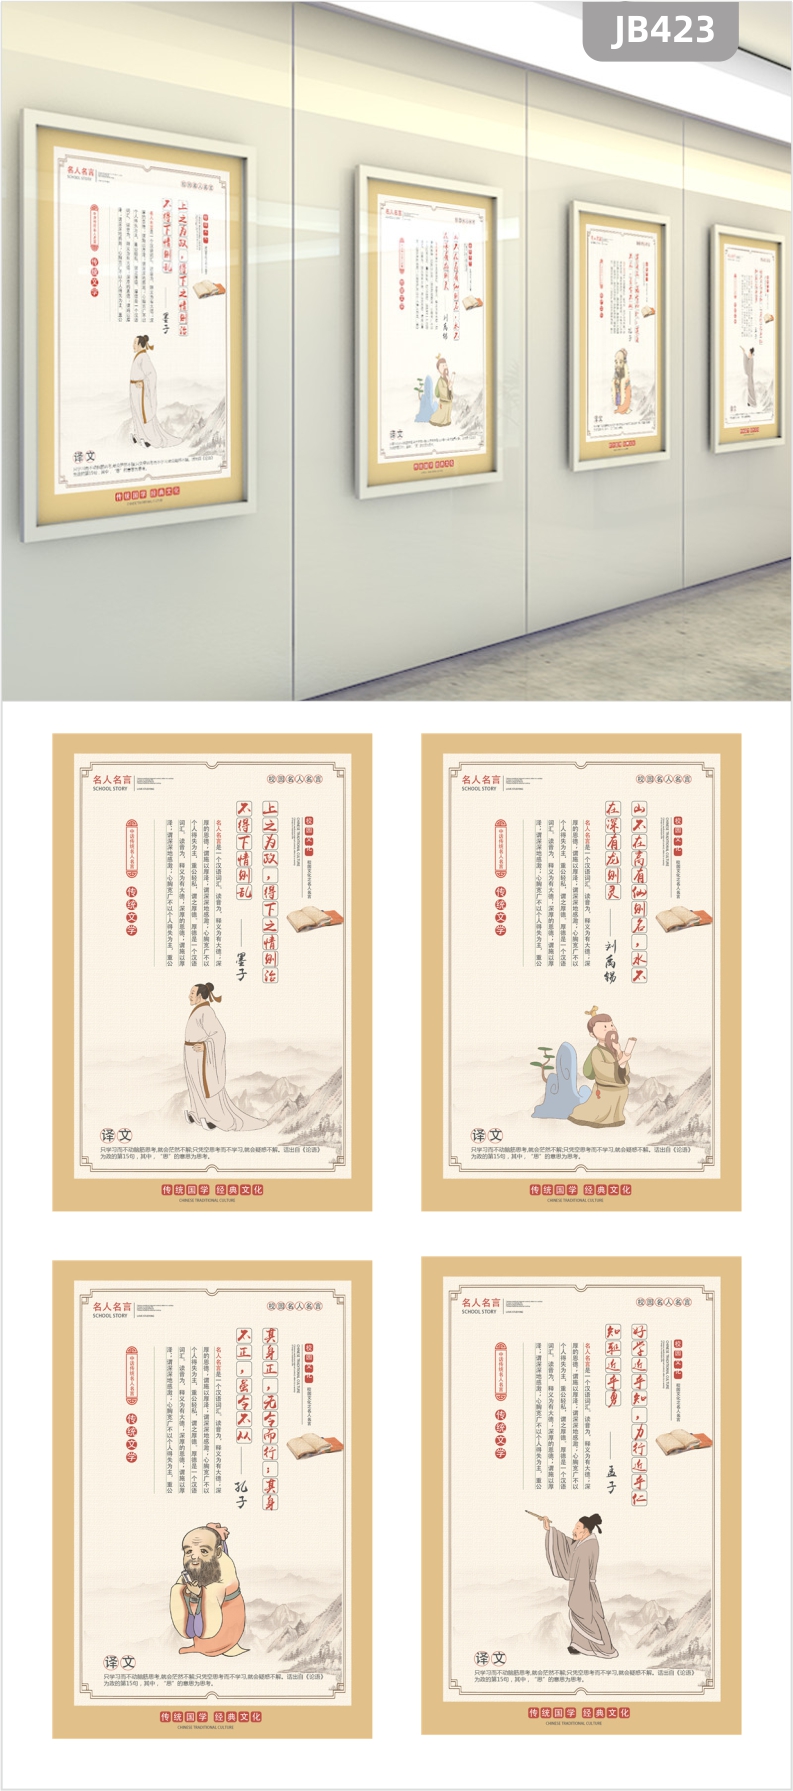 中国风礼堂文化挂画办公室装饰画学校名人名言无框壁画展板教室走廊挂画